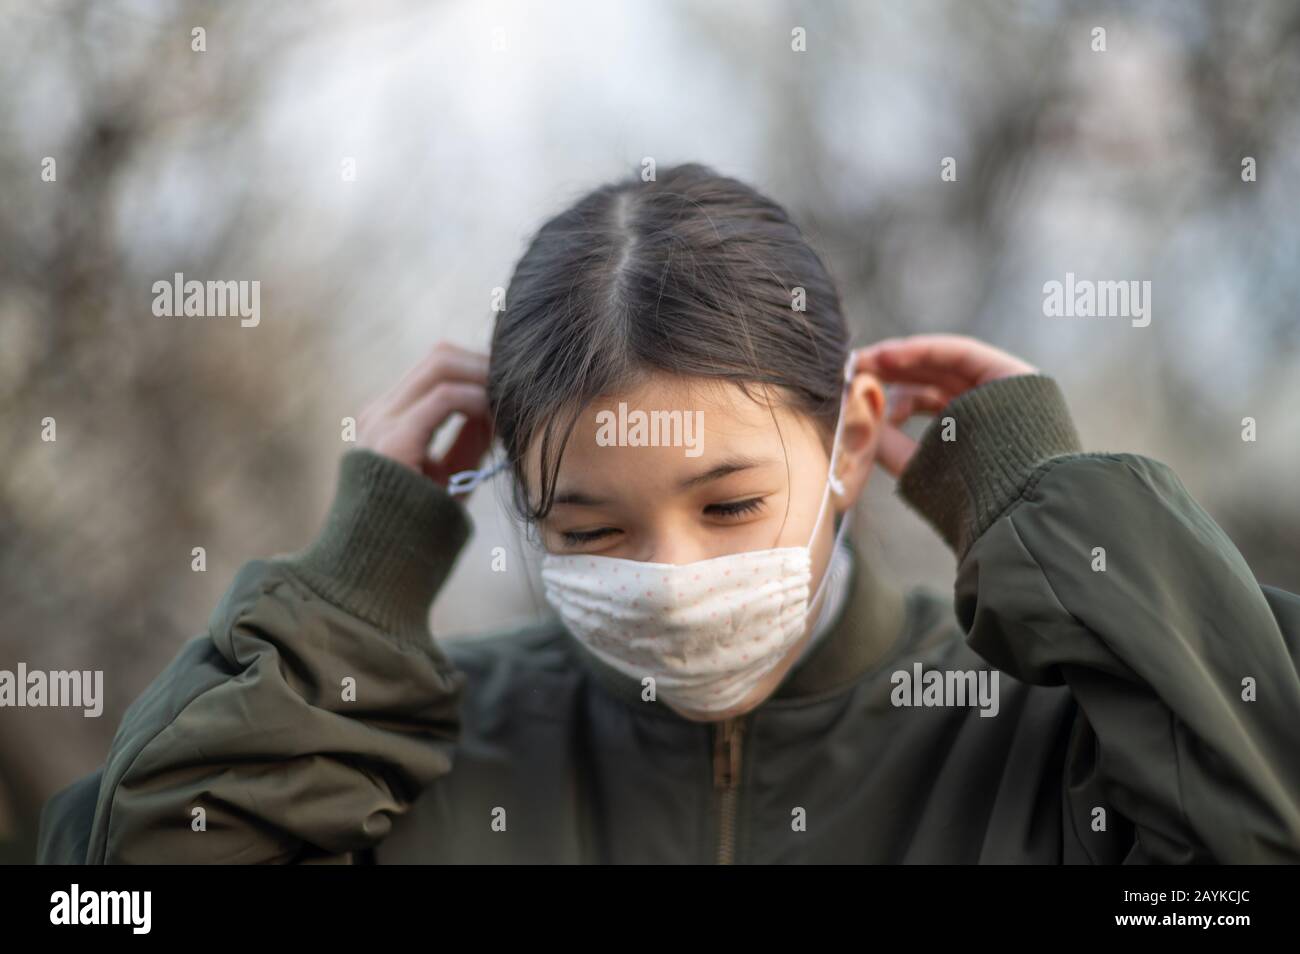 Junges Mädchen/Kind gemischter asiatischer - europäischer Ethnie, das eine Gesichtsmaske aufsetzt, um Viren/Allergien zu vermeiden. Nahaufnahme von Außenaufnahmen während Covid-19. Stockfoto